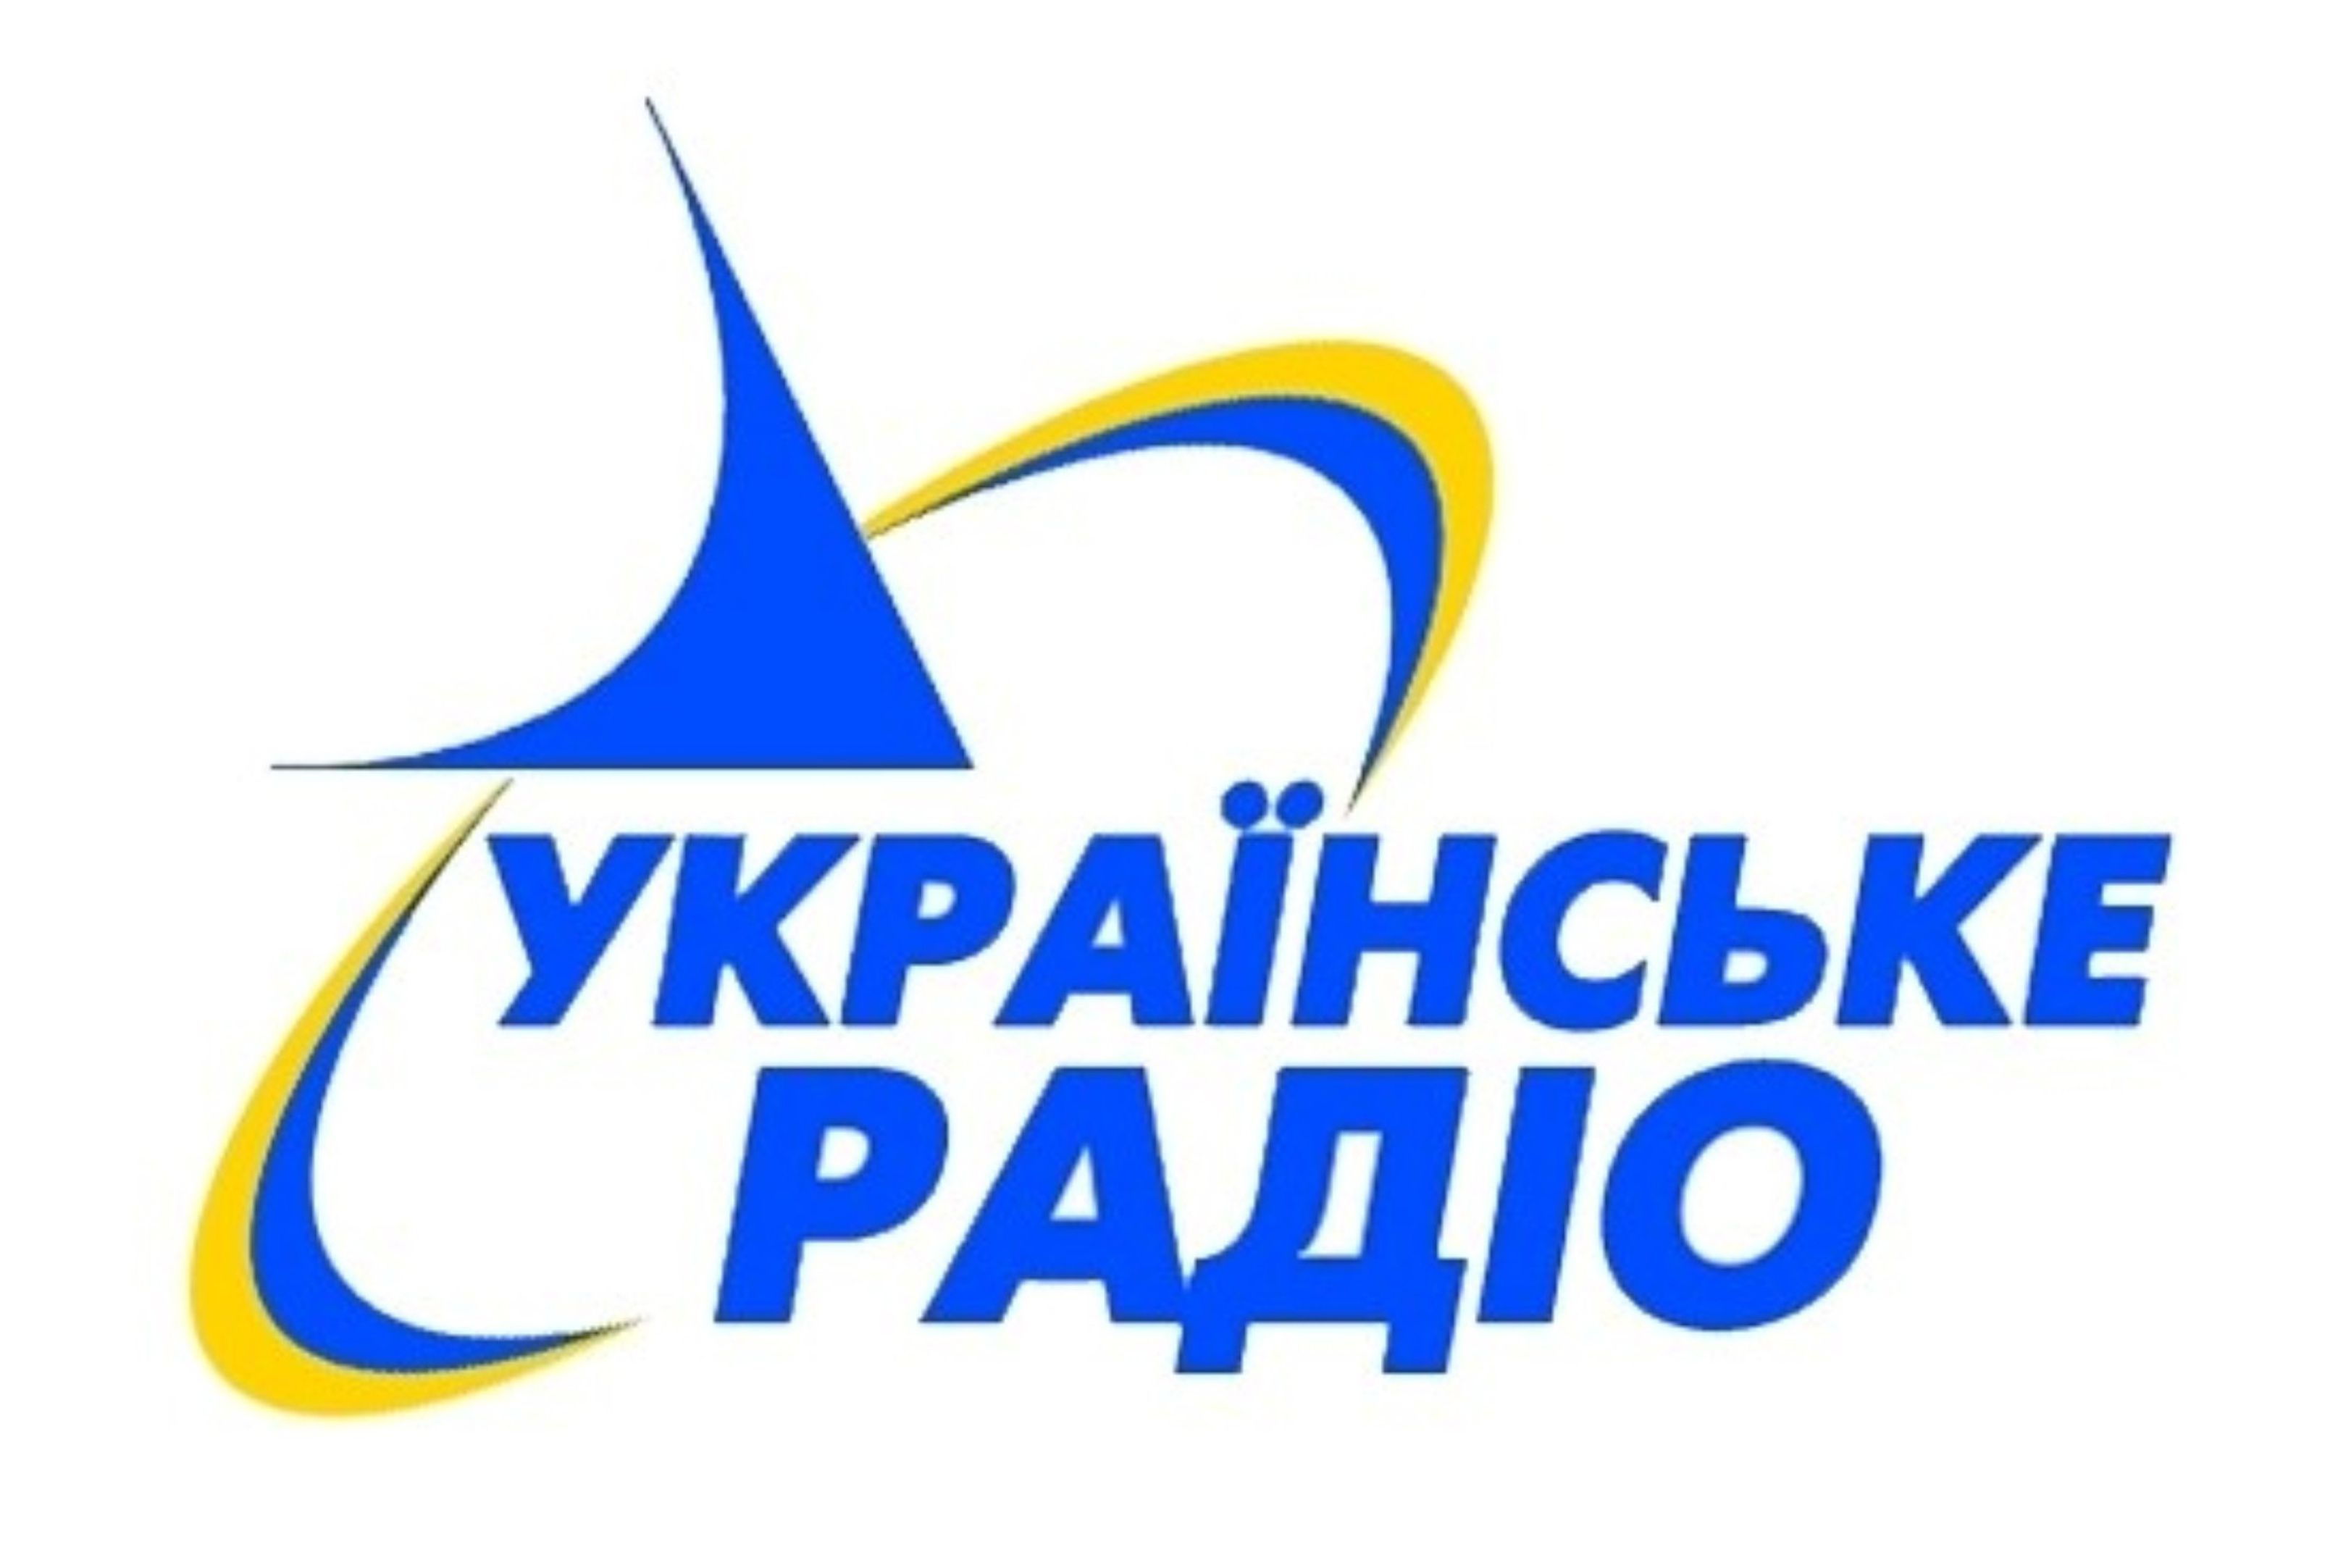 FM-мережа «Українського радіо» розширилася до 134 міст